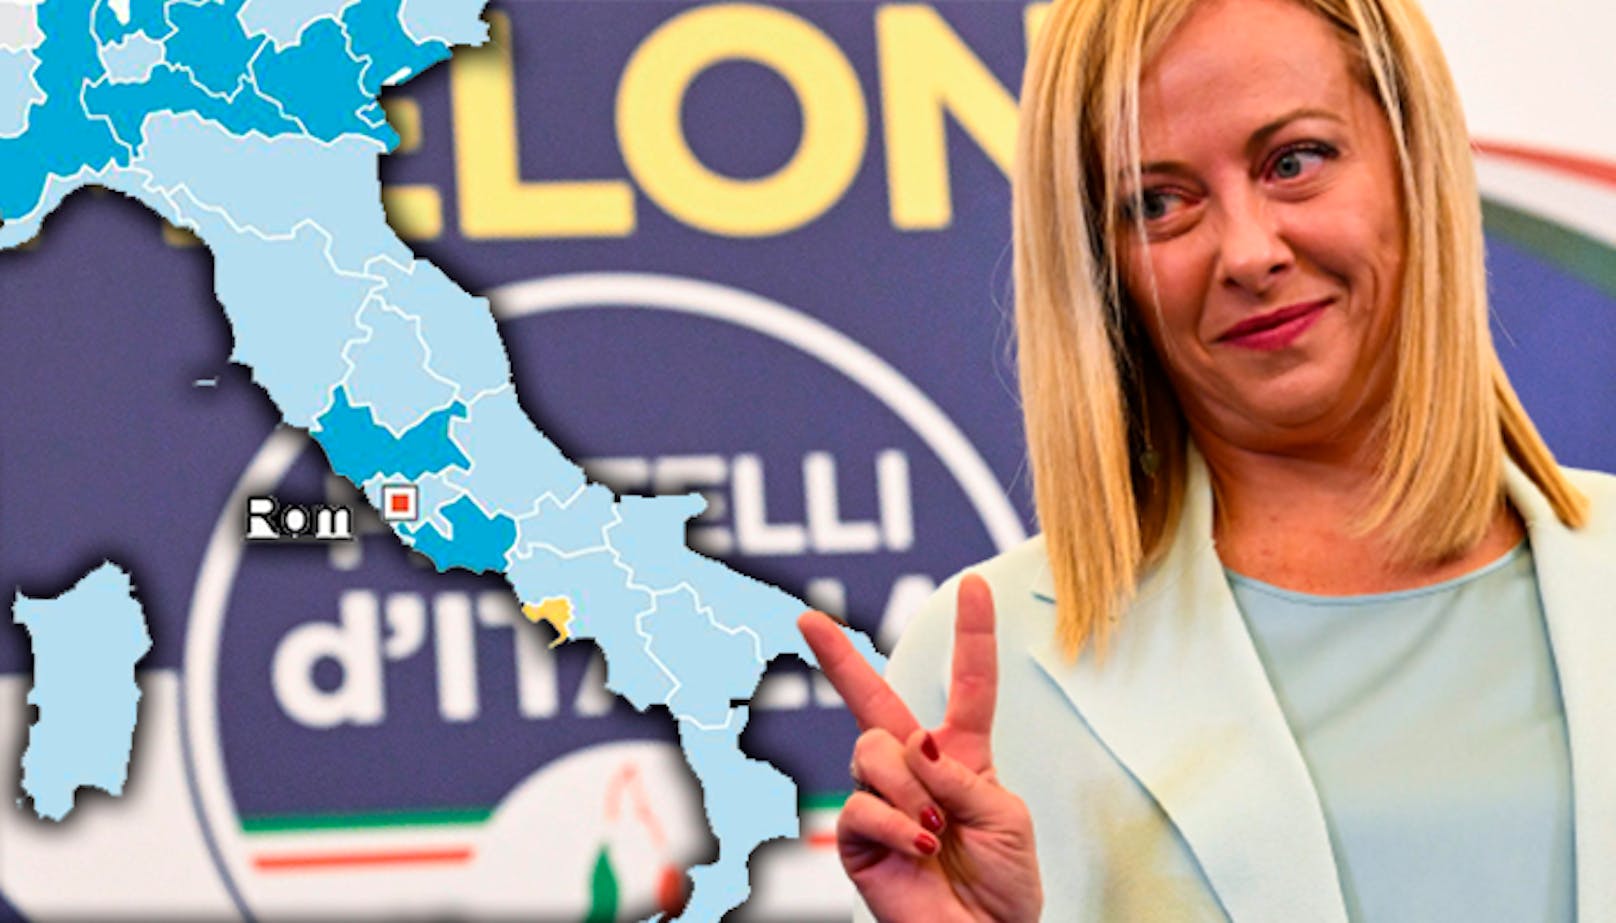 Die ultrarechte Postfaschistin Giorgia Meloni (45) steht kurz davor, die erste Ministerpräsidentin Italiens zu werden.